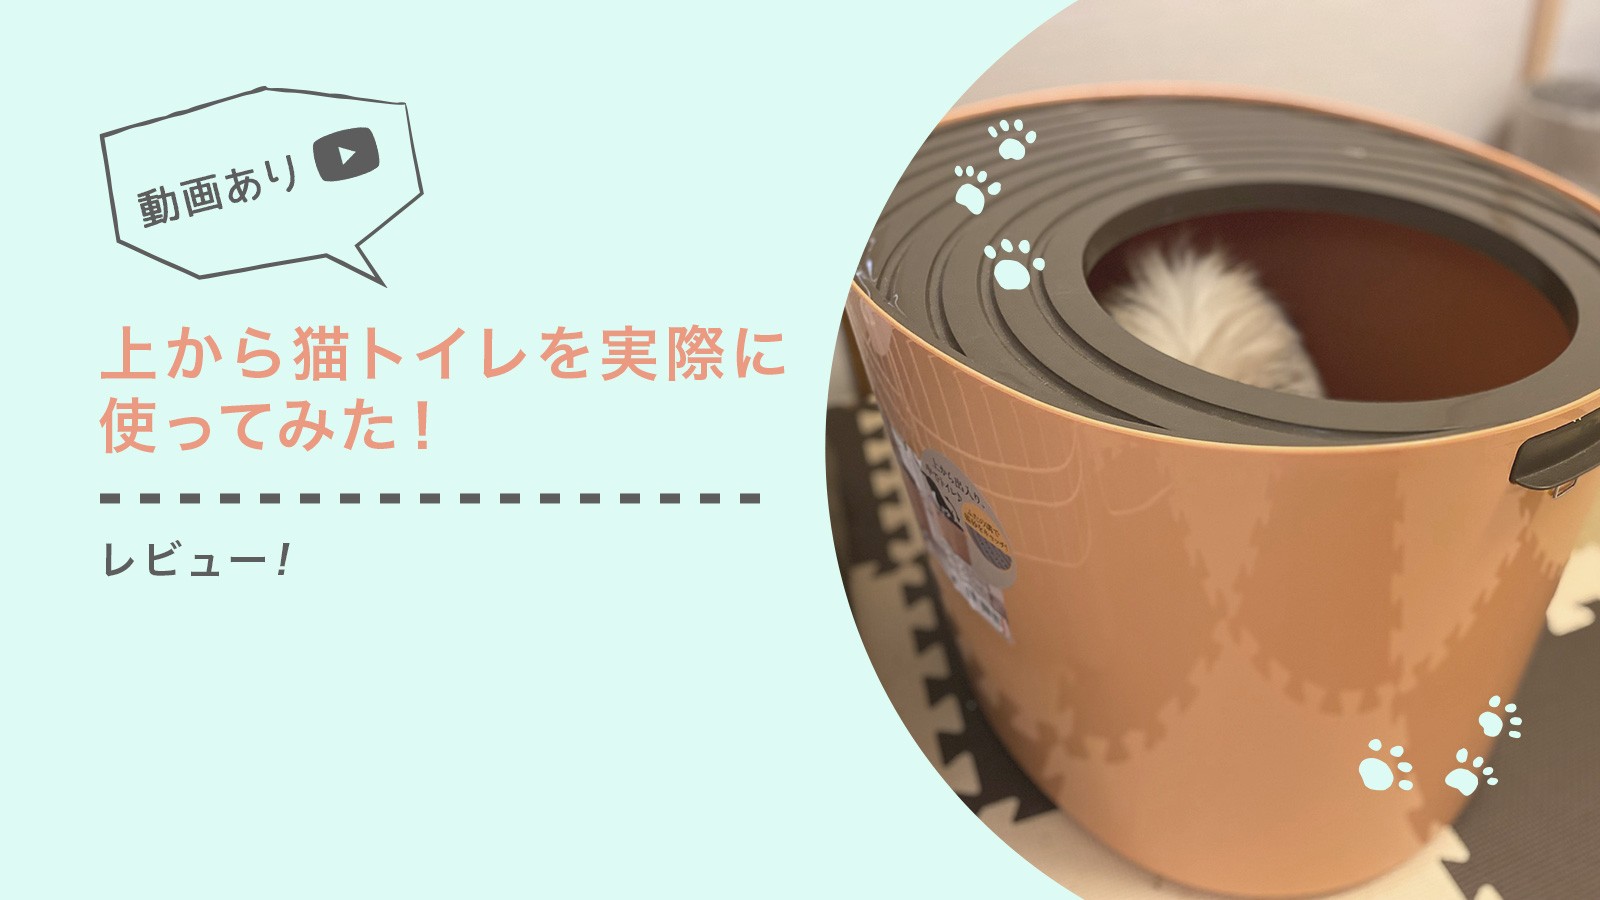 【レビュー】アイリスオーヤマの『上から猫トイレ』を実際に使ってみた!【動画あり】